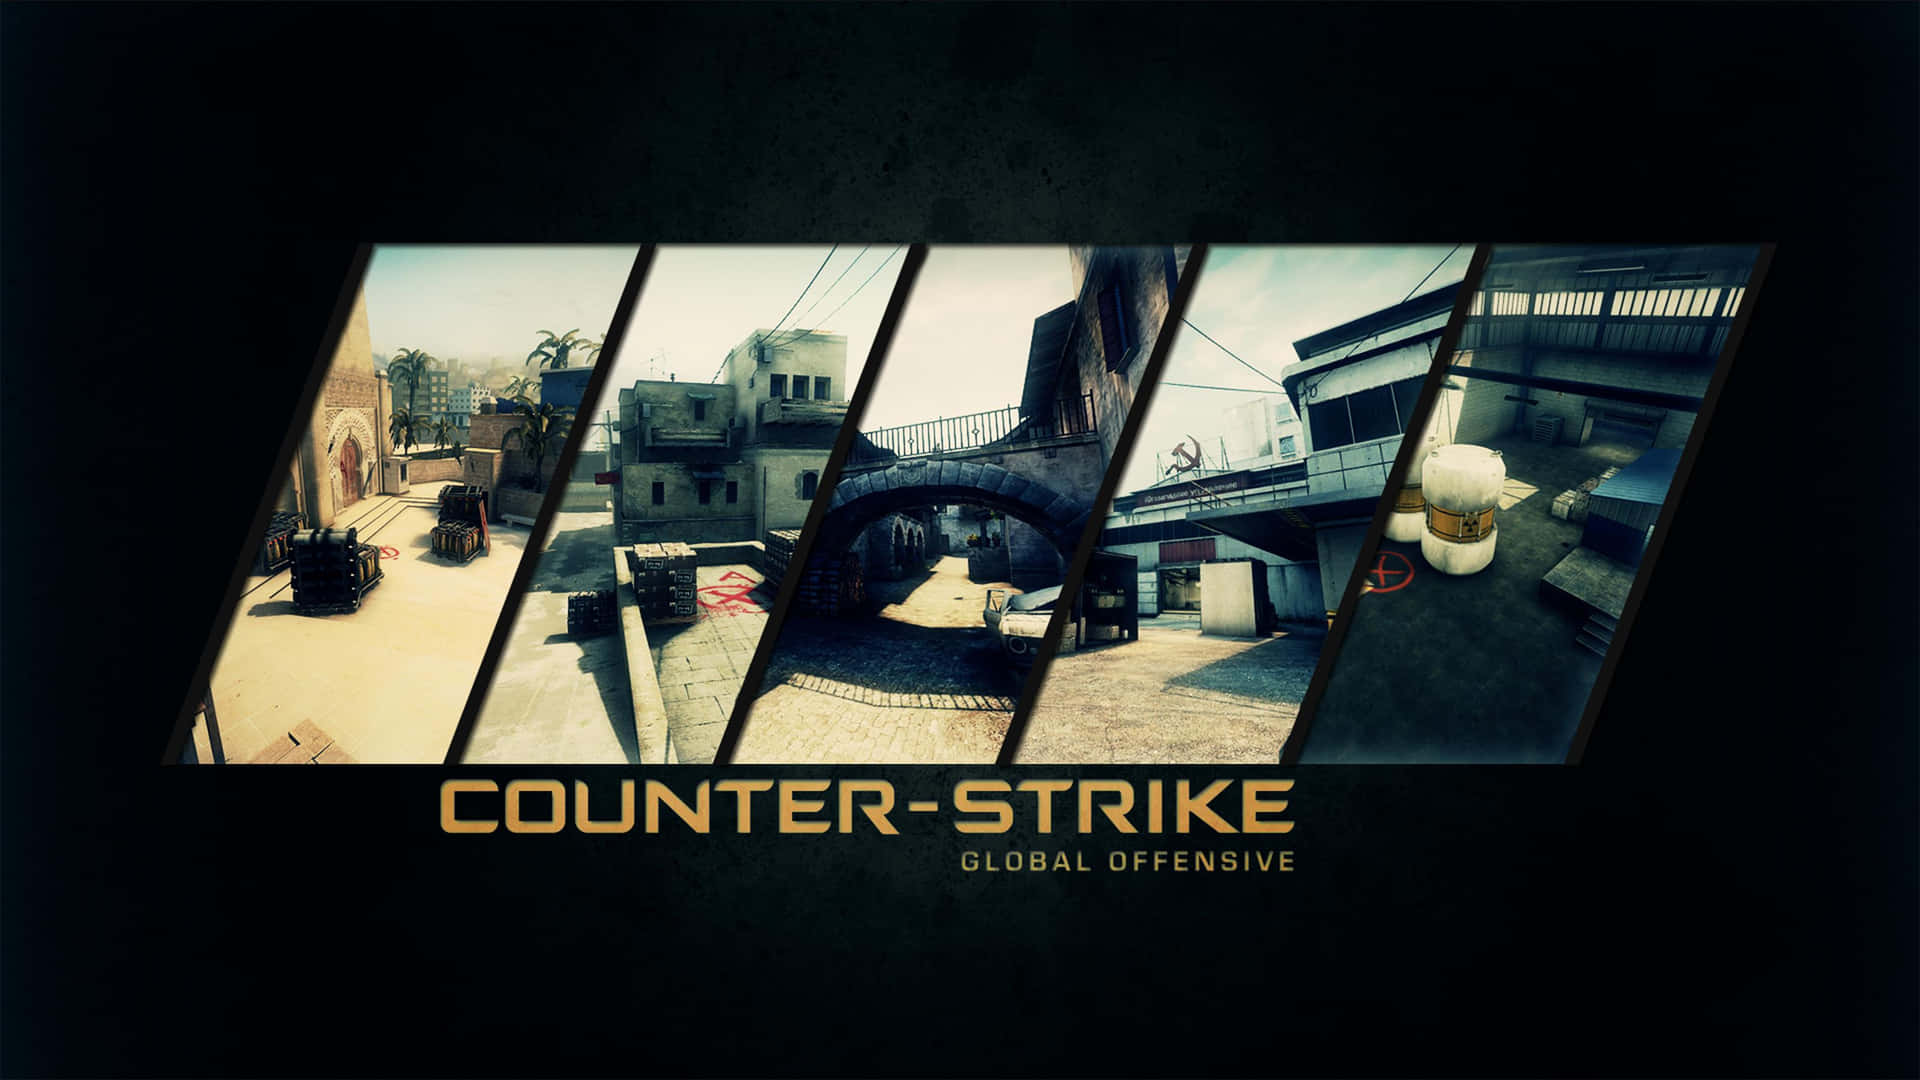 Counter Strike - Pc - Pc - Pc - Pc - Pc - Pc Wallpaper